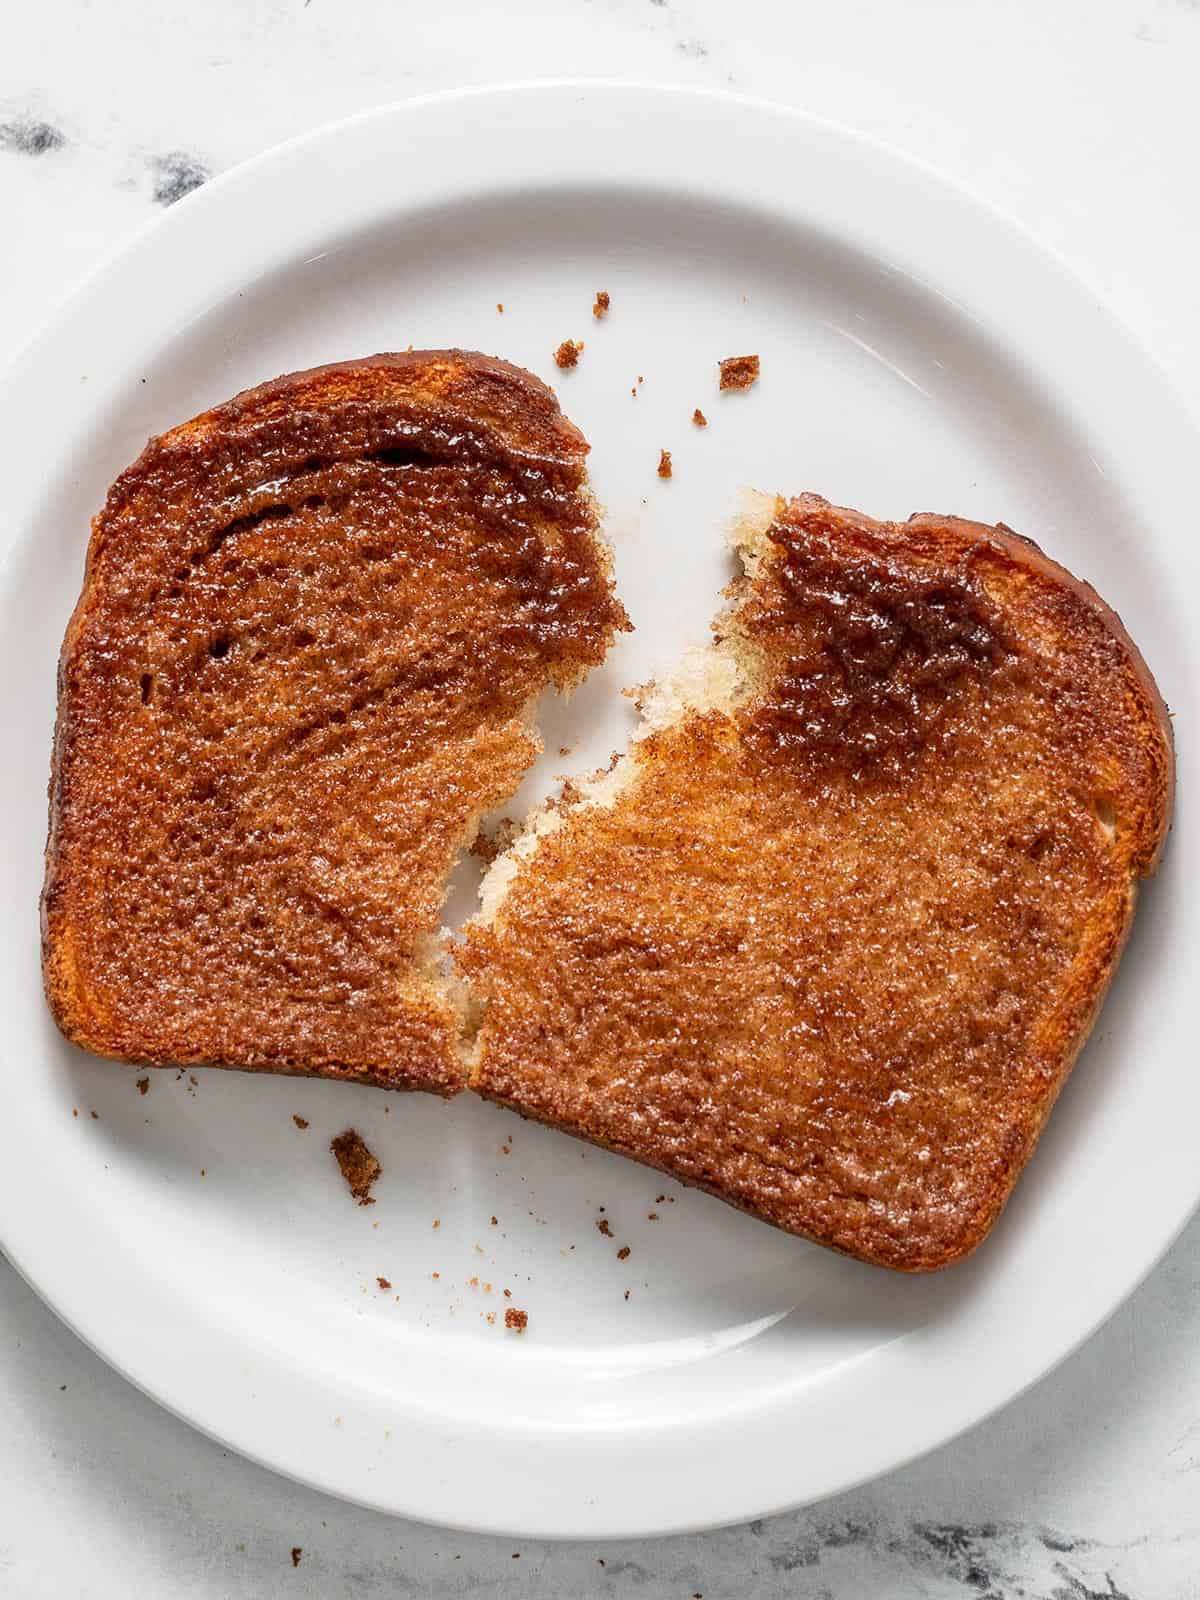 Colpo dall'alto di toast alla cannella cucinato strappato e servito su un piatto bianco.